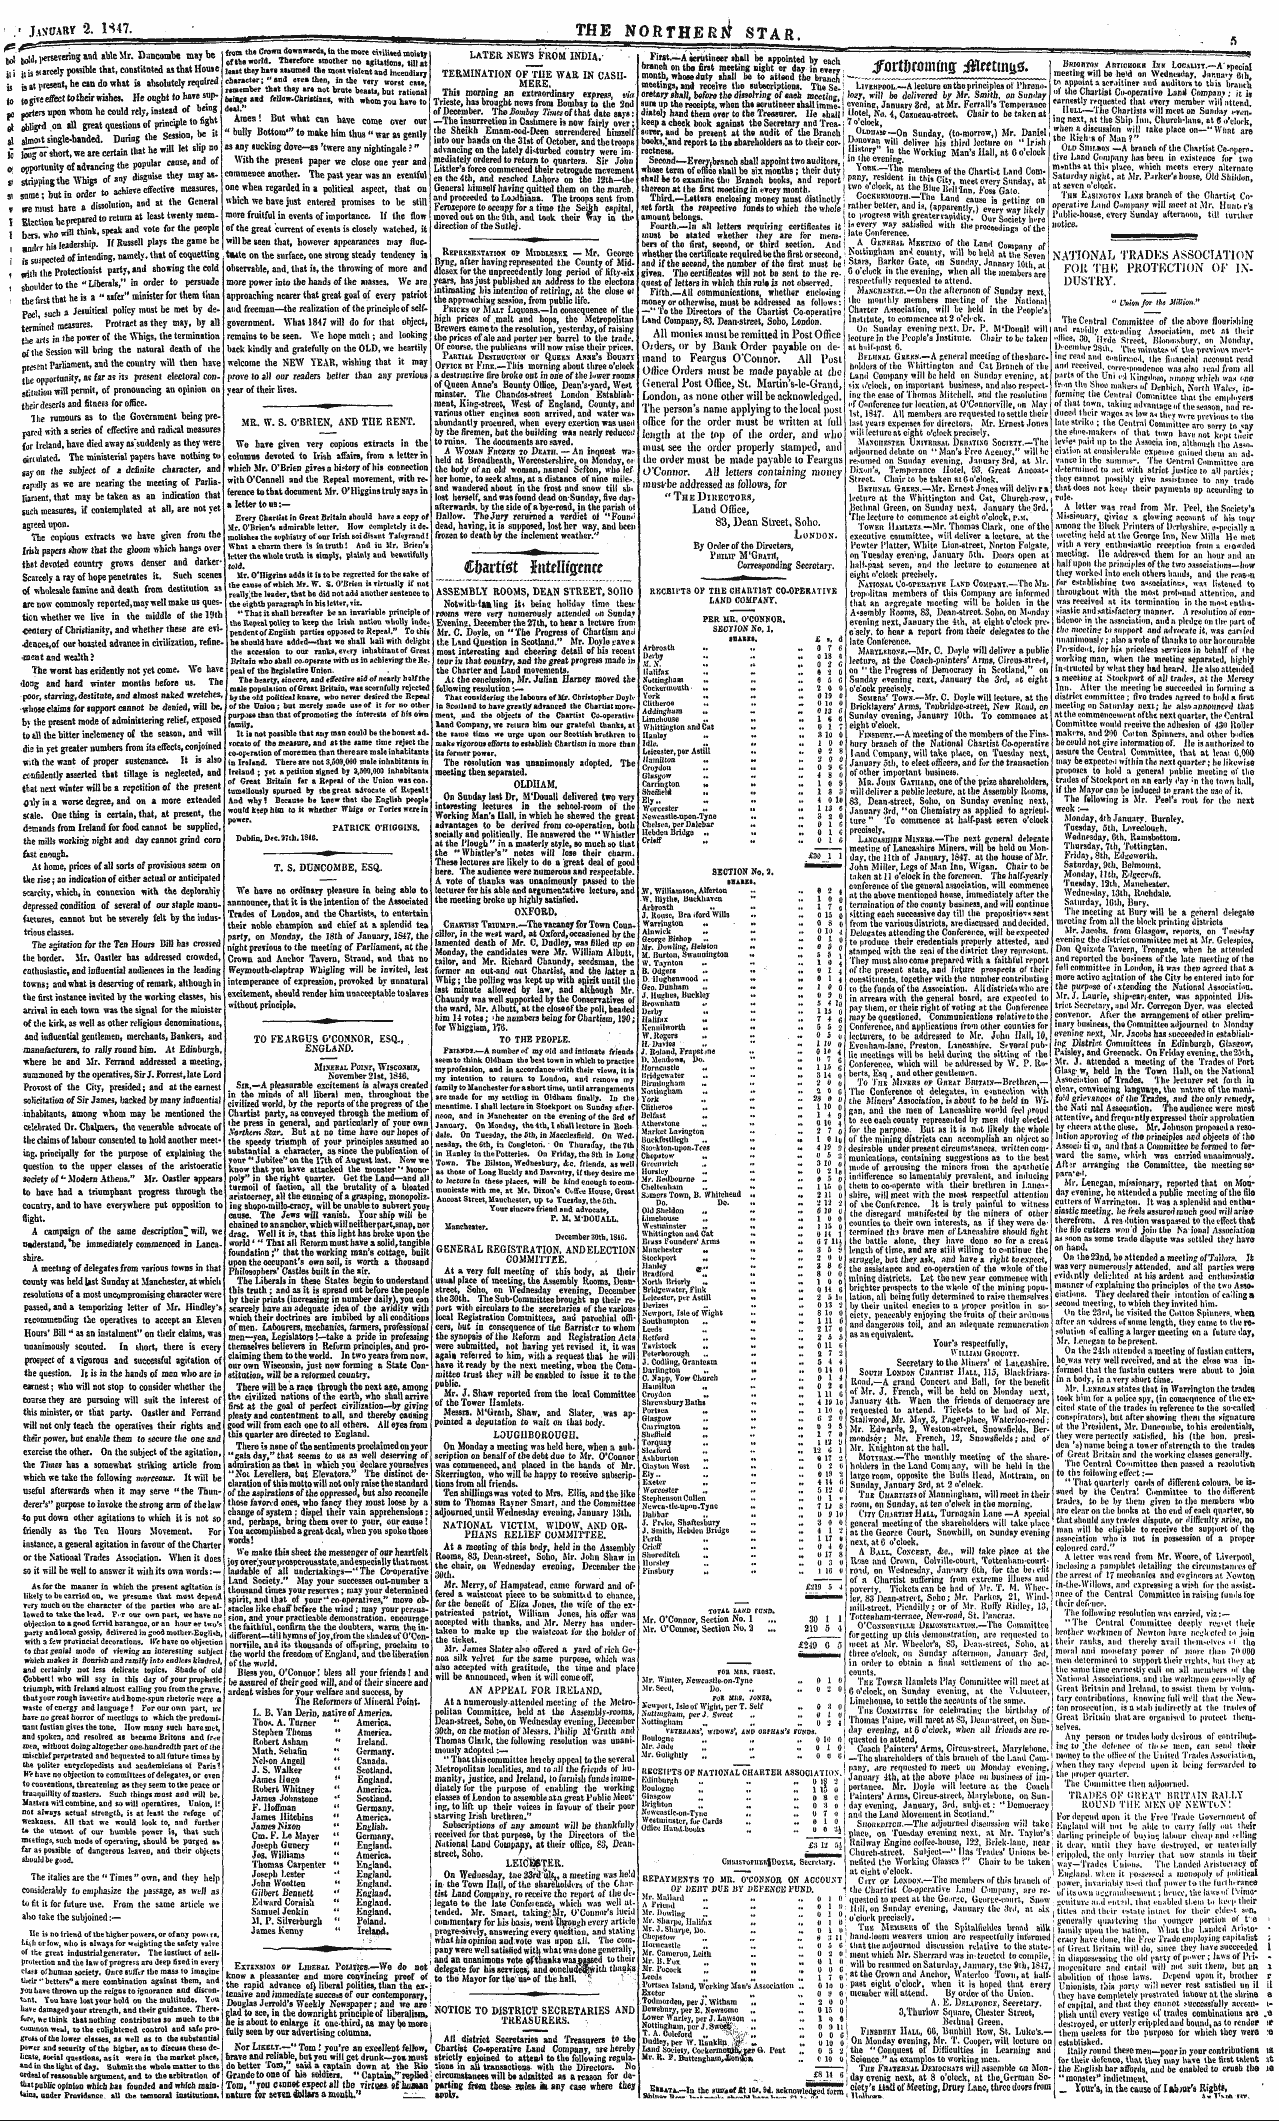 Northern Star (1837-1852): jS F Y, 3rd edition - C&Arttet Hxttllimm